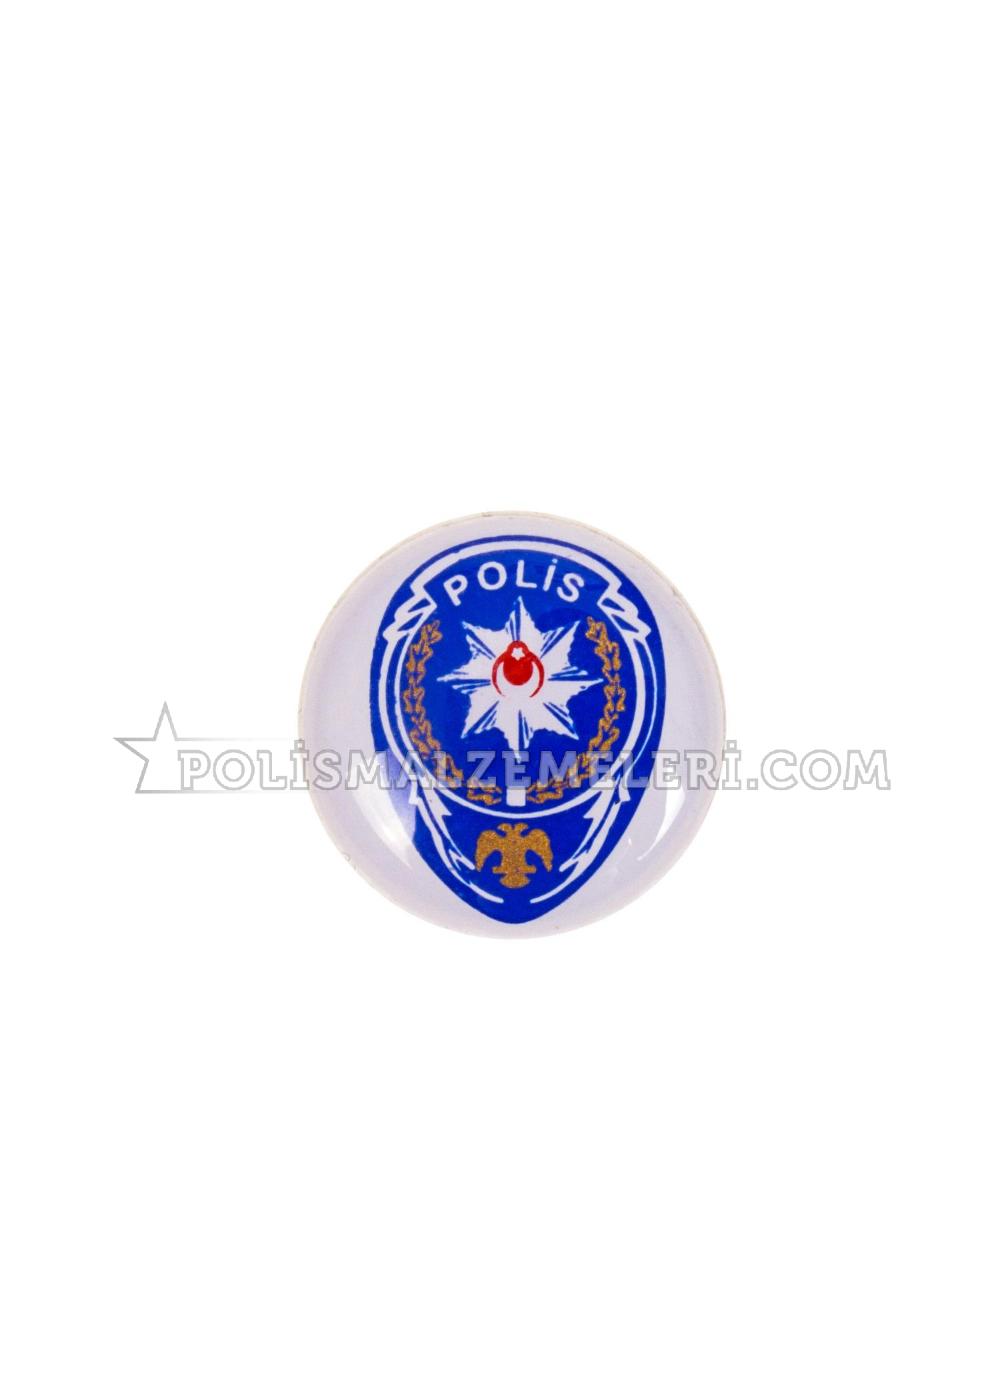 Polis Logo Sticker Yapıştırma - Mavi Sticker | Polismalzemeleri | 1667